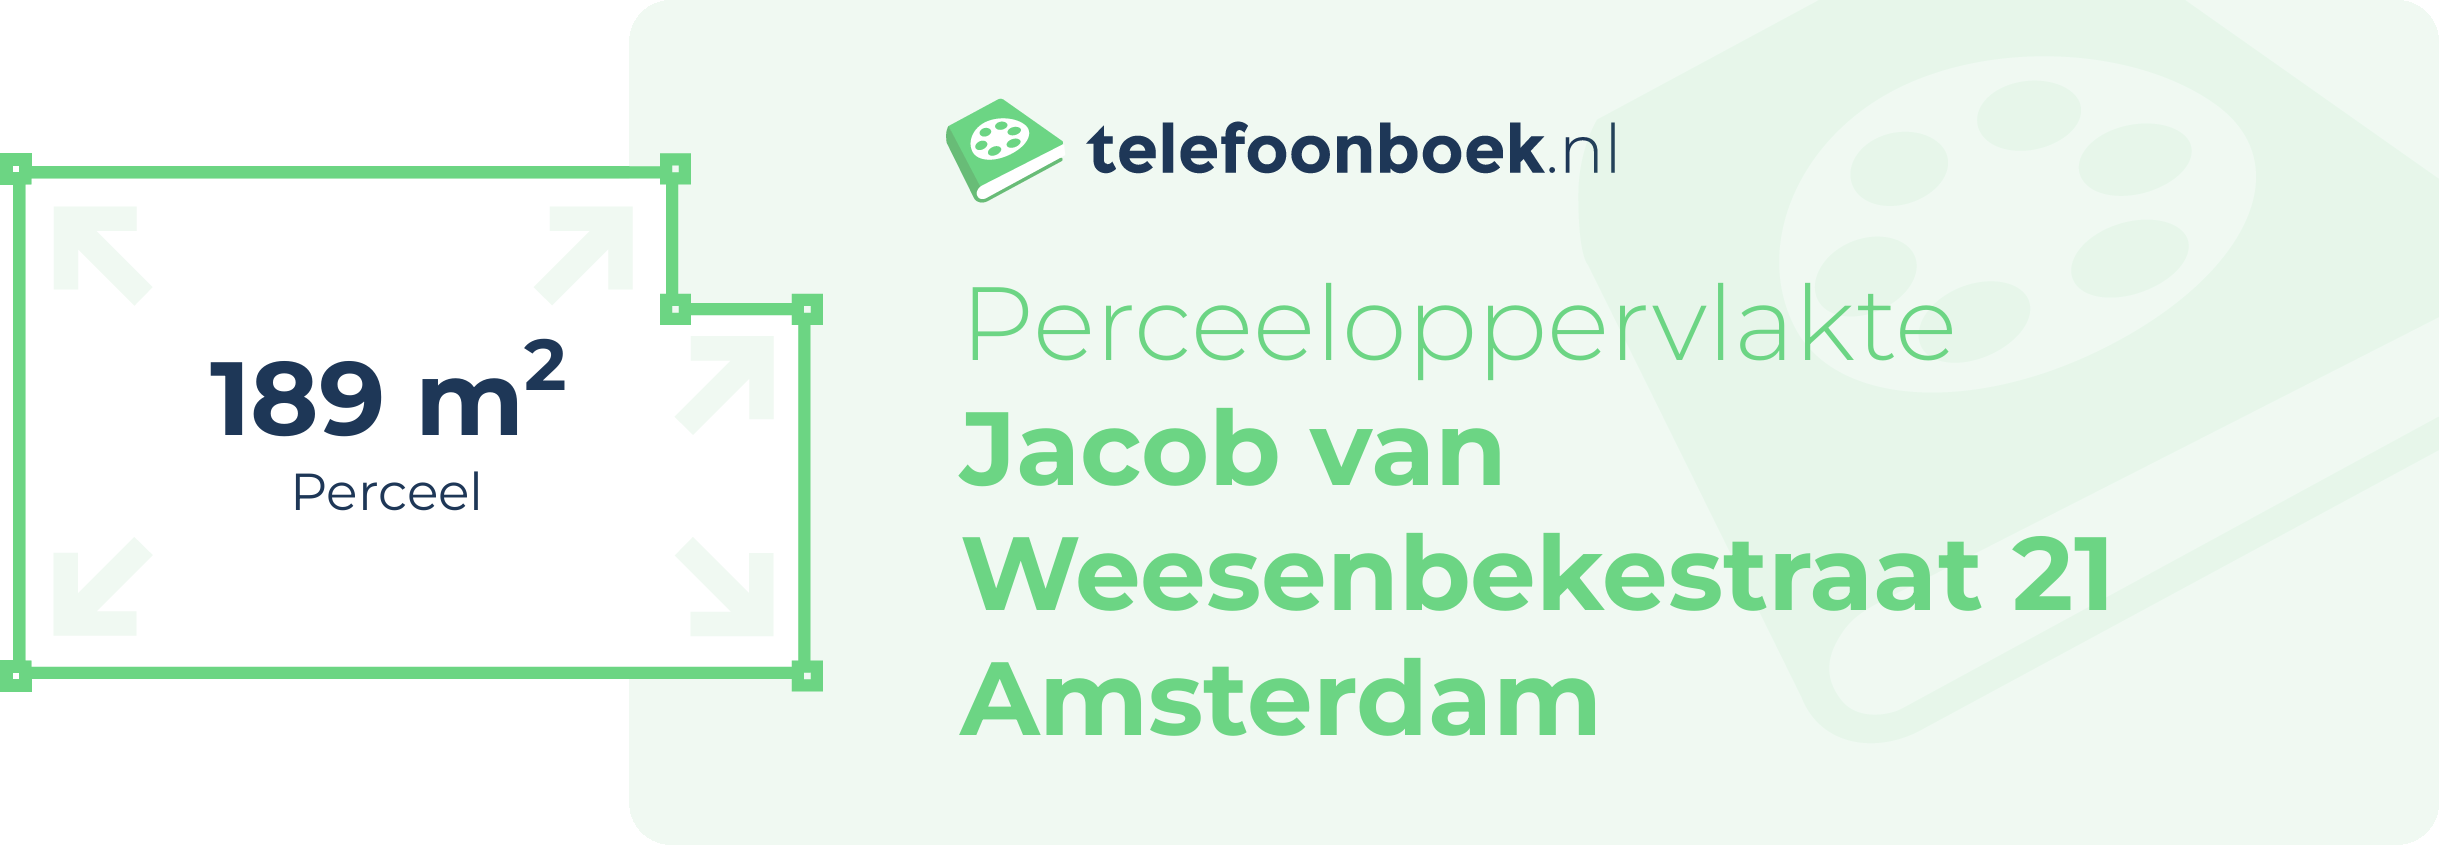 Perceeloppervlakte Jacob Van Weesenbekestraat 21 Amsterdam